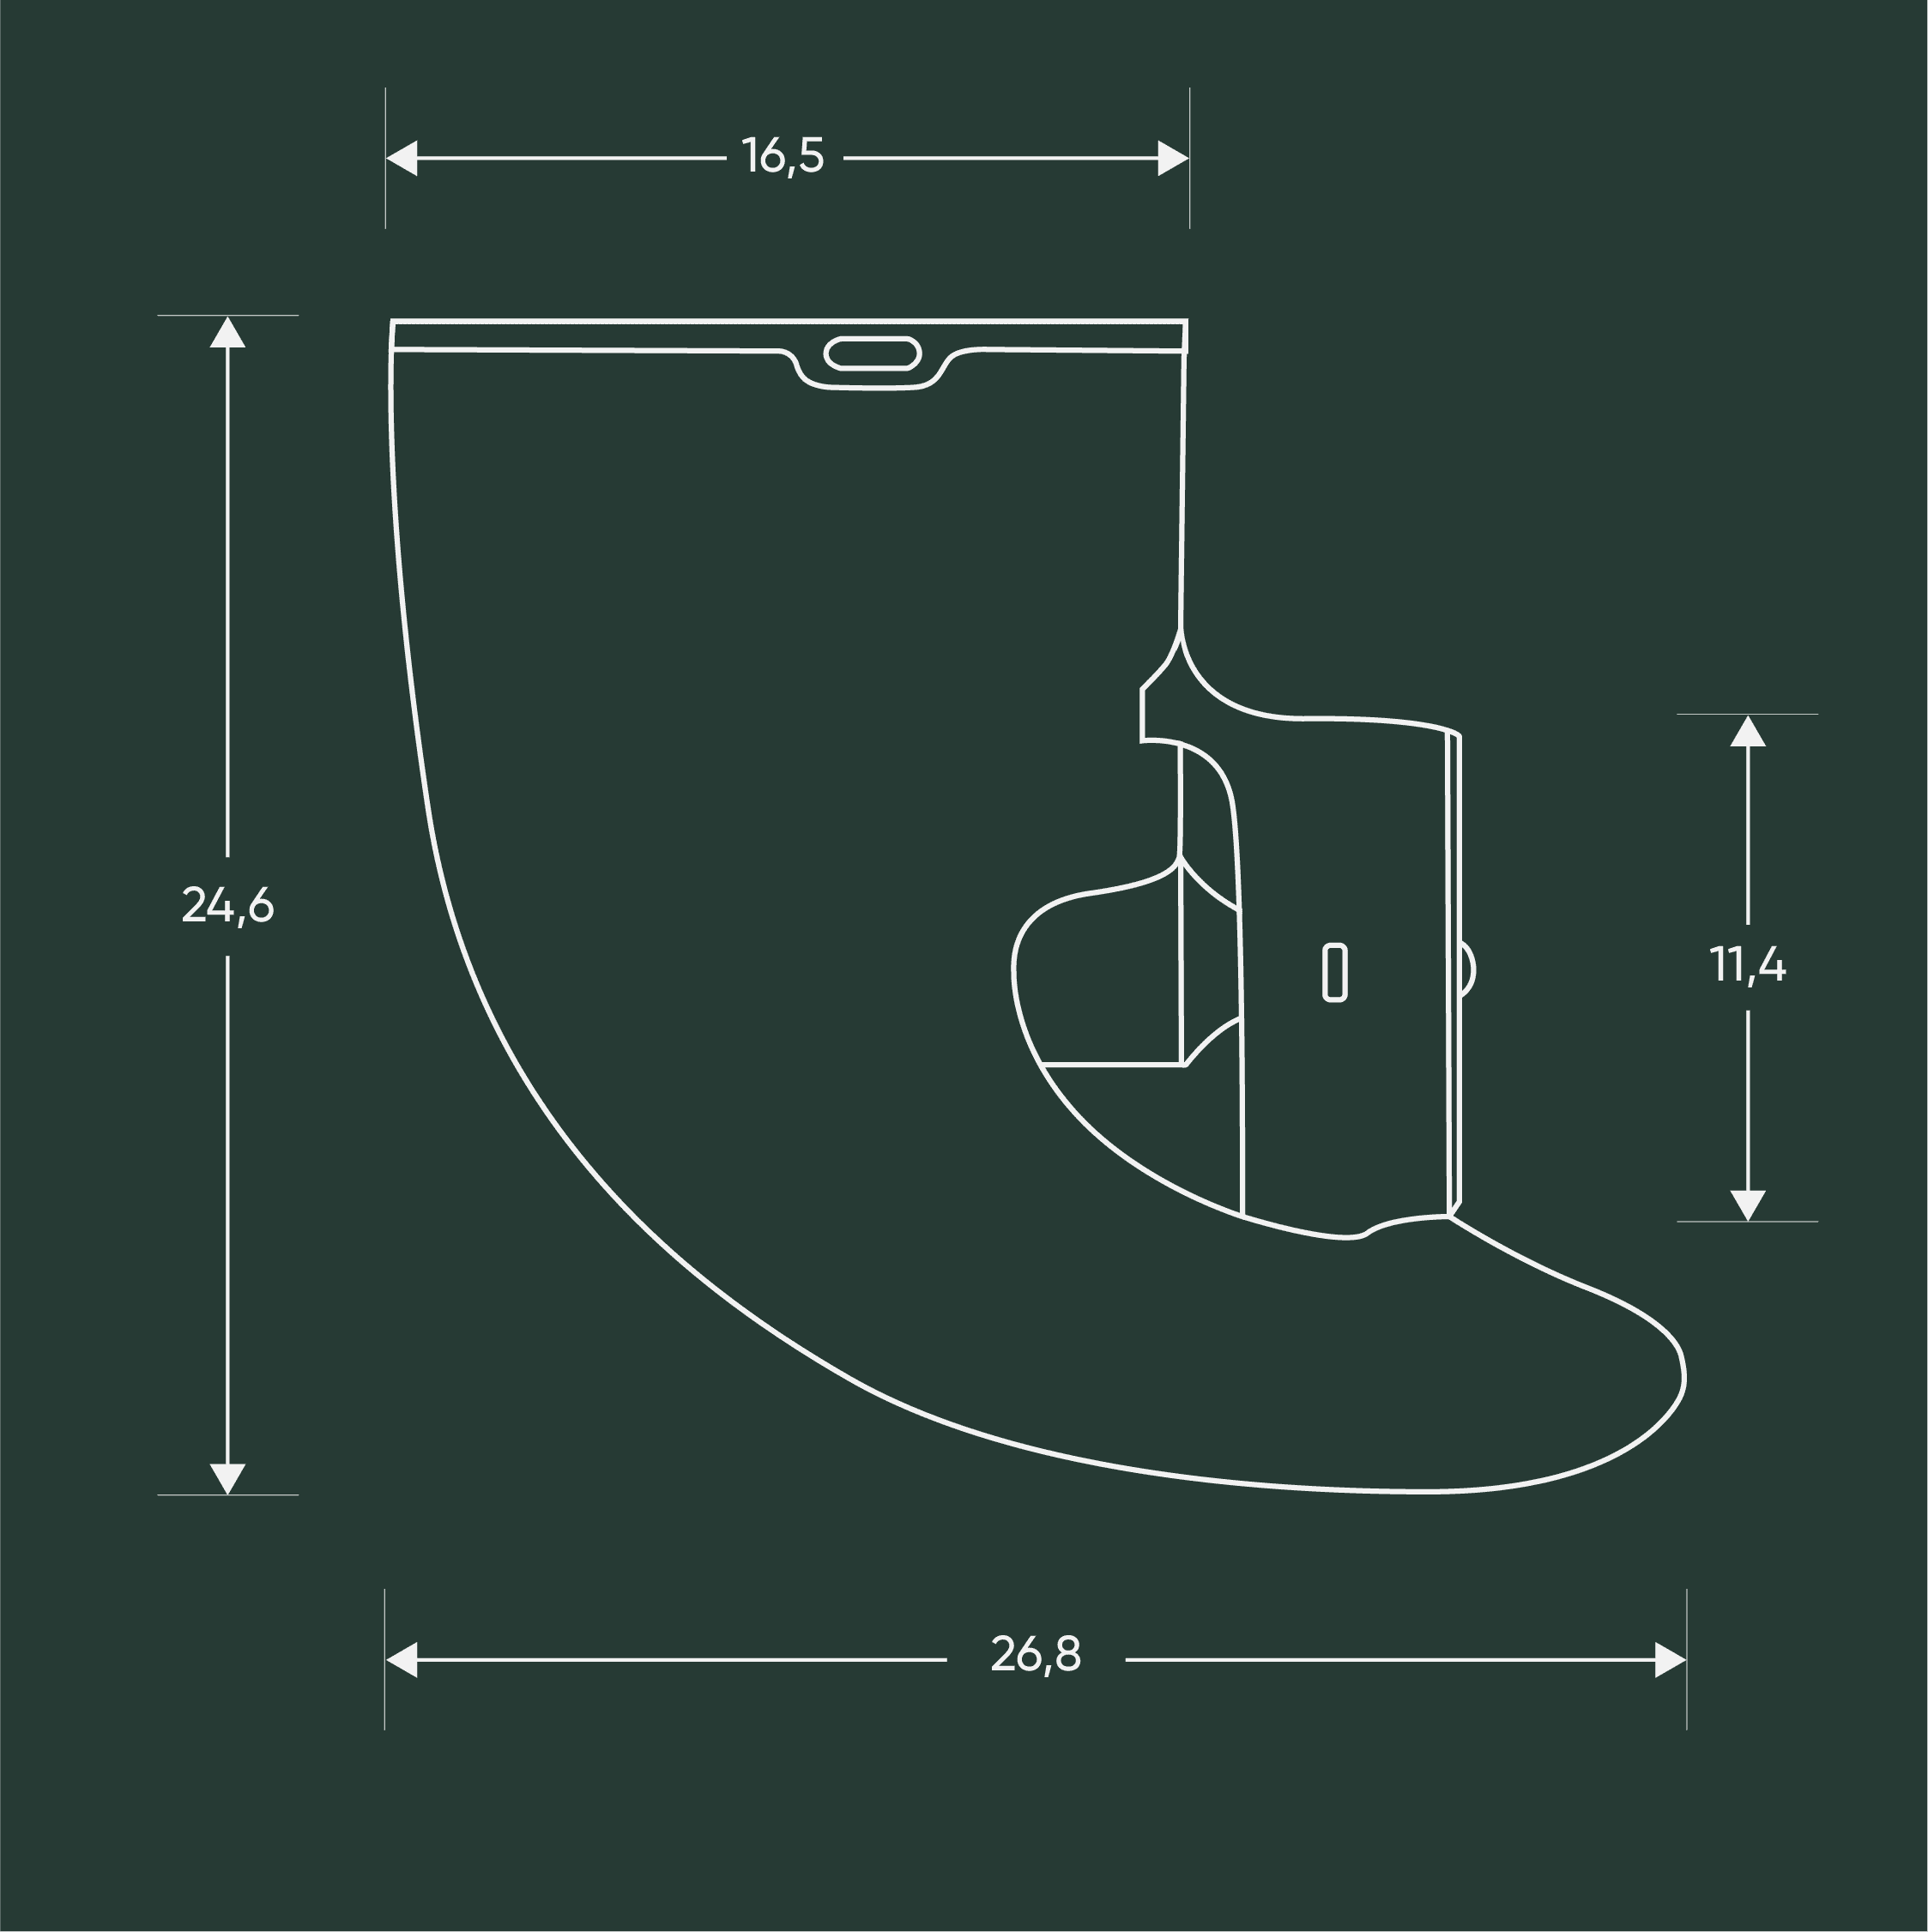 Un dibujo técnico con las dimensiones de la aleta 2.0: longitud superior: 16,5 cm, altura: 24,6 cm, longitud inferior: 26,8 cm, altura del accionamiento: 11,4 cm.